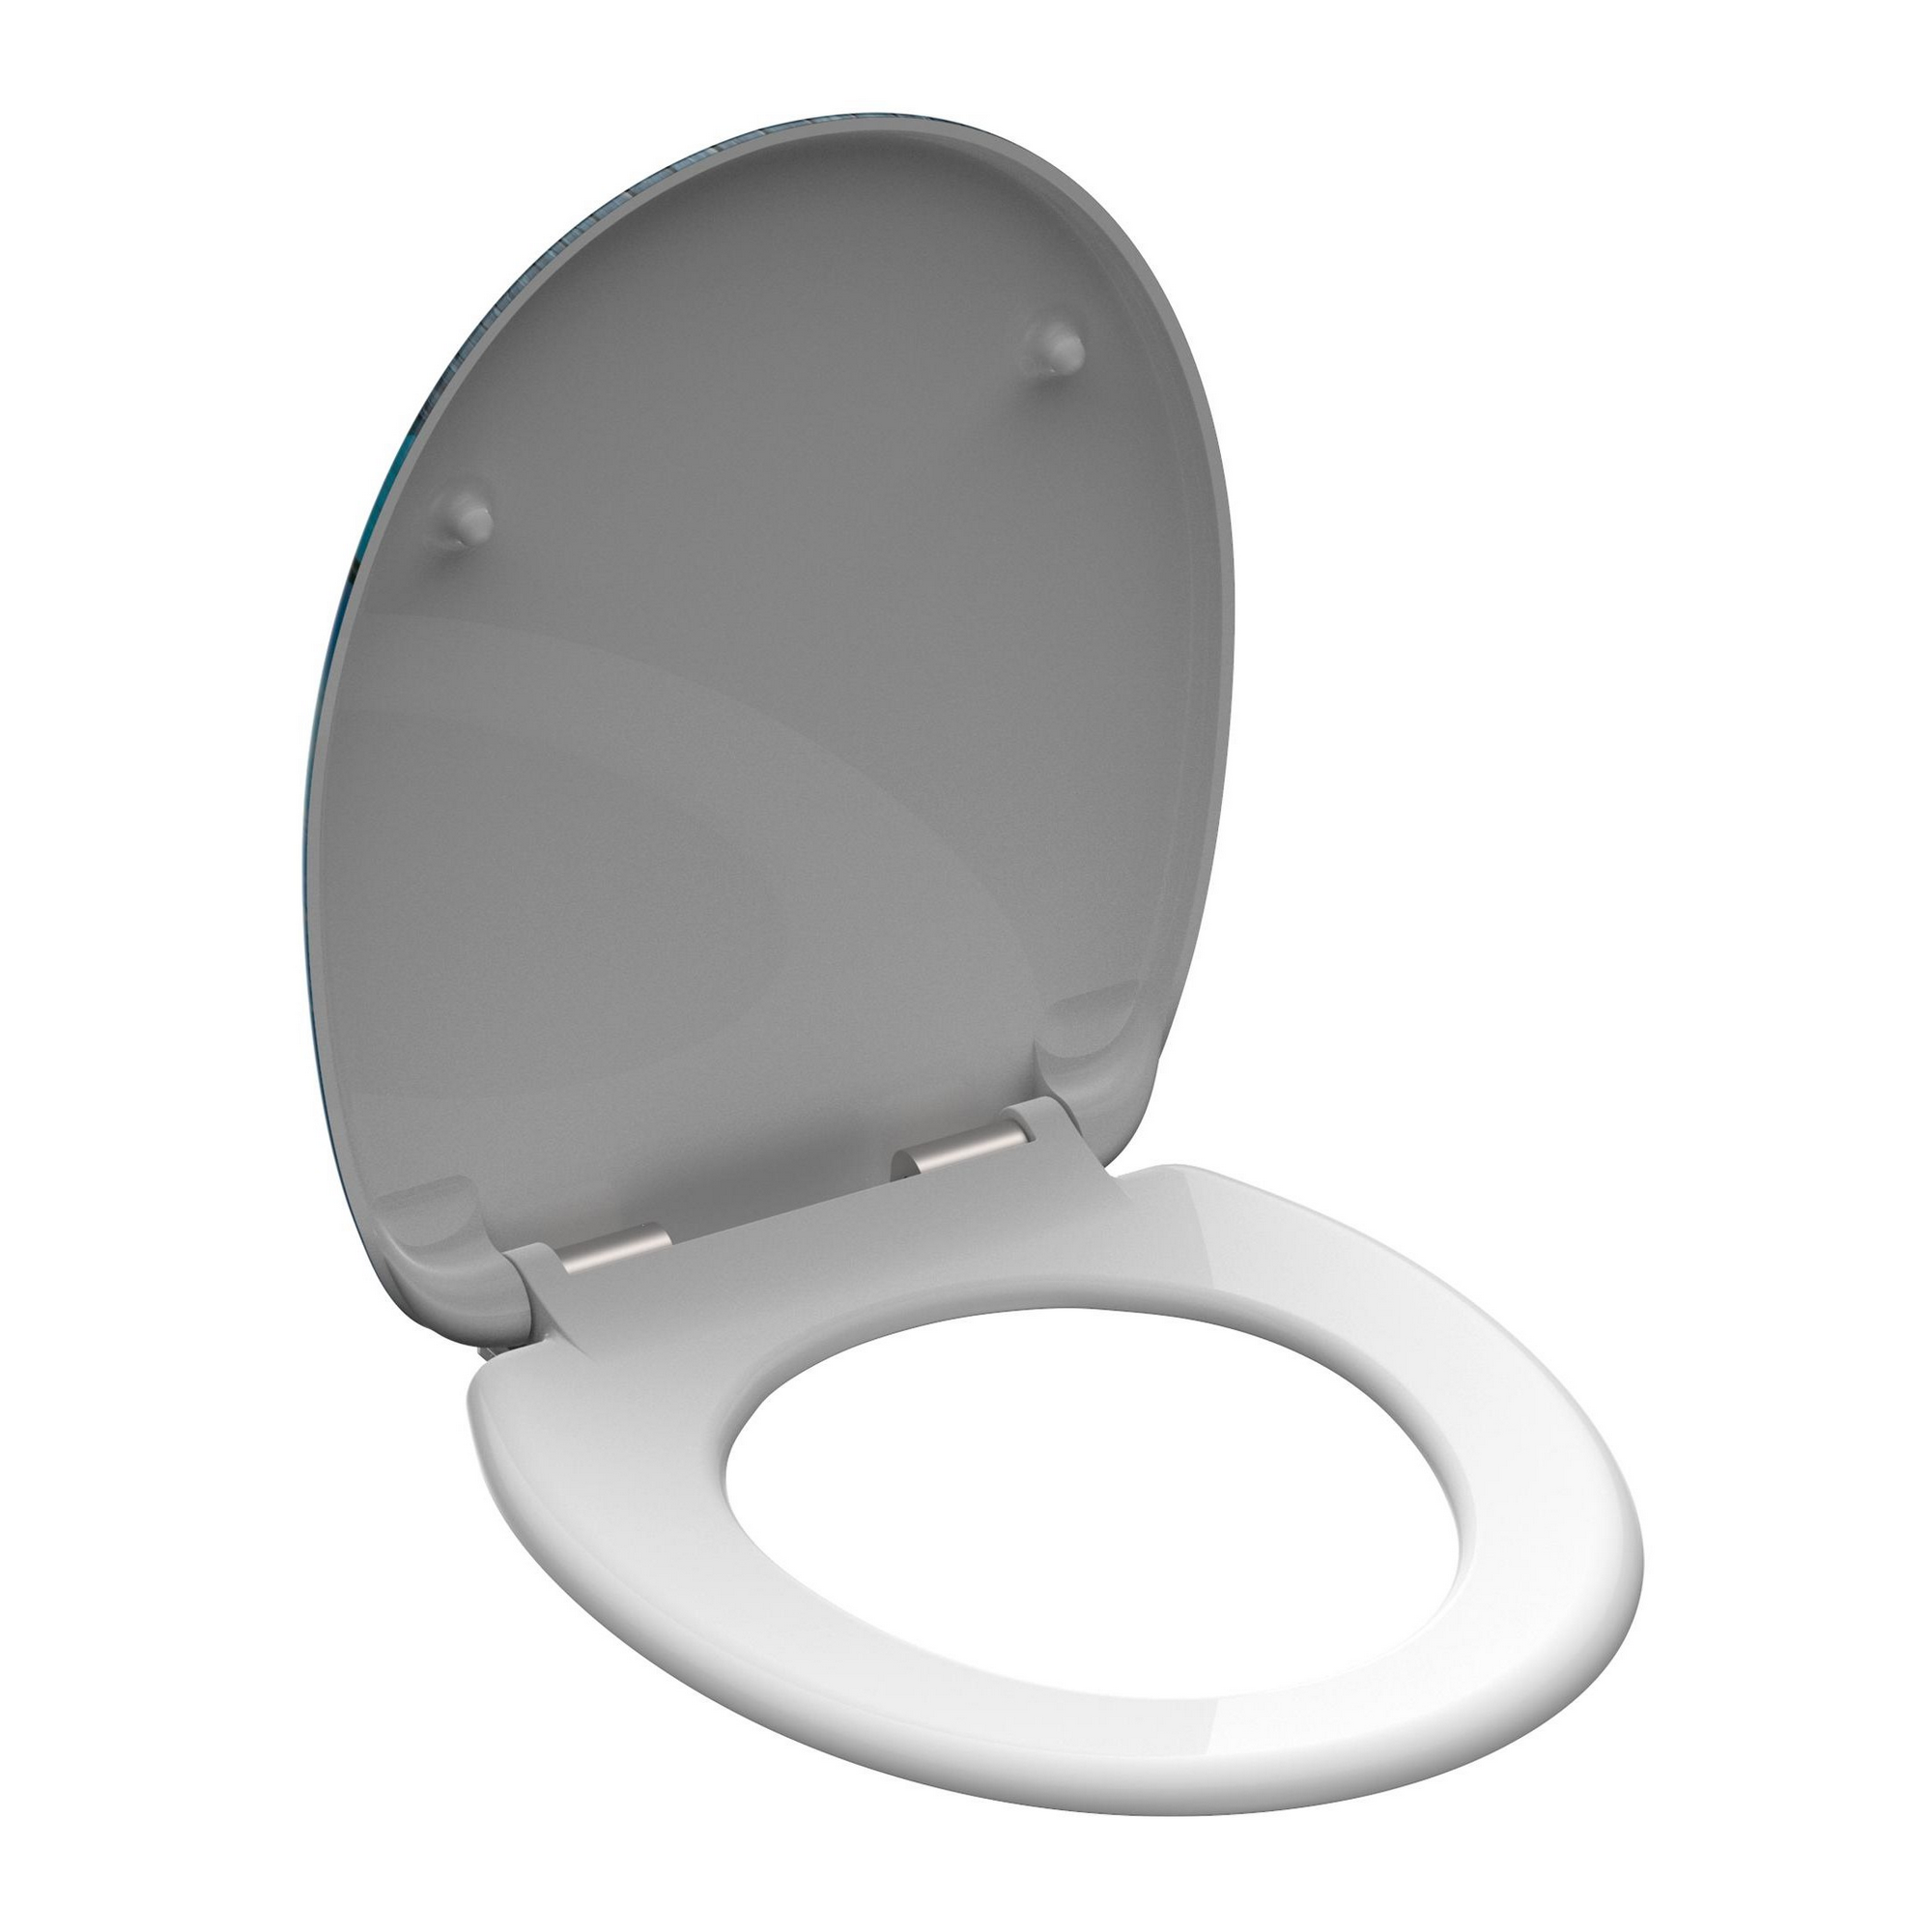 WC-Sitz 'Offline' mit Absenkautomatik braun/weiß 37,5 x 45 cm + product picture